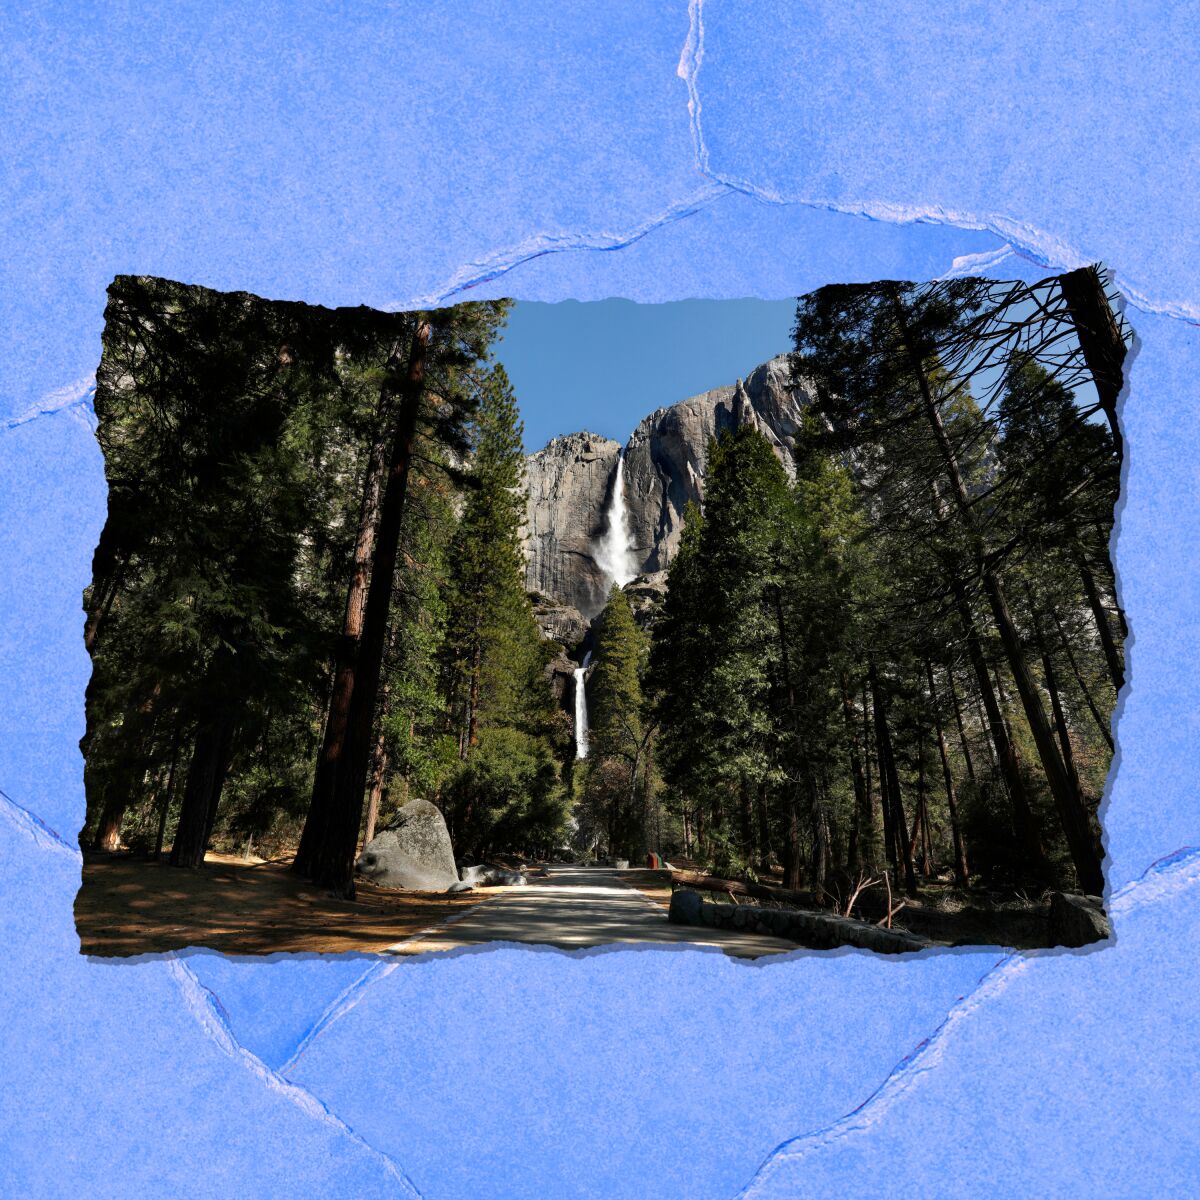 A long waterfall cascades down a cliff, seen through tall pines.